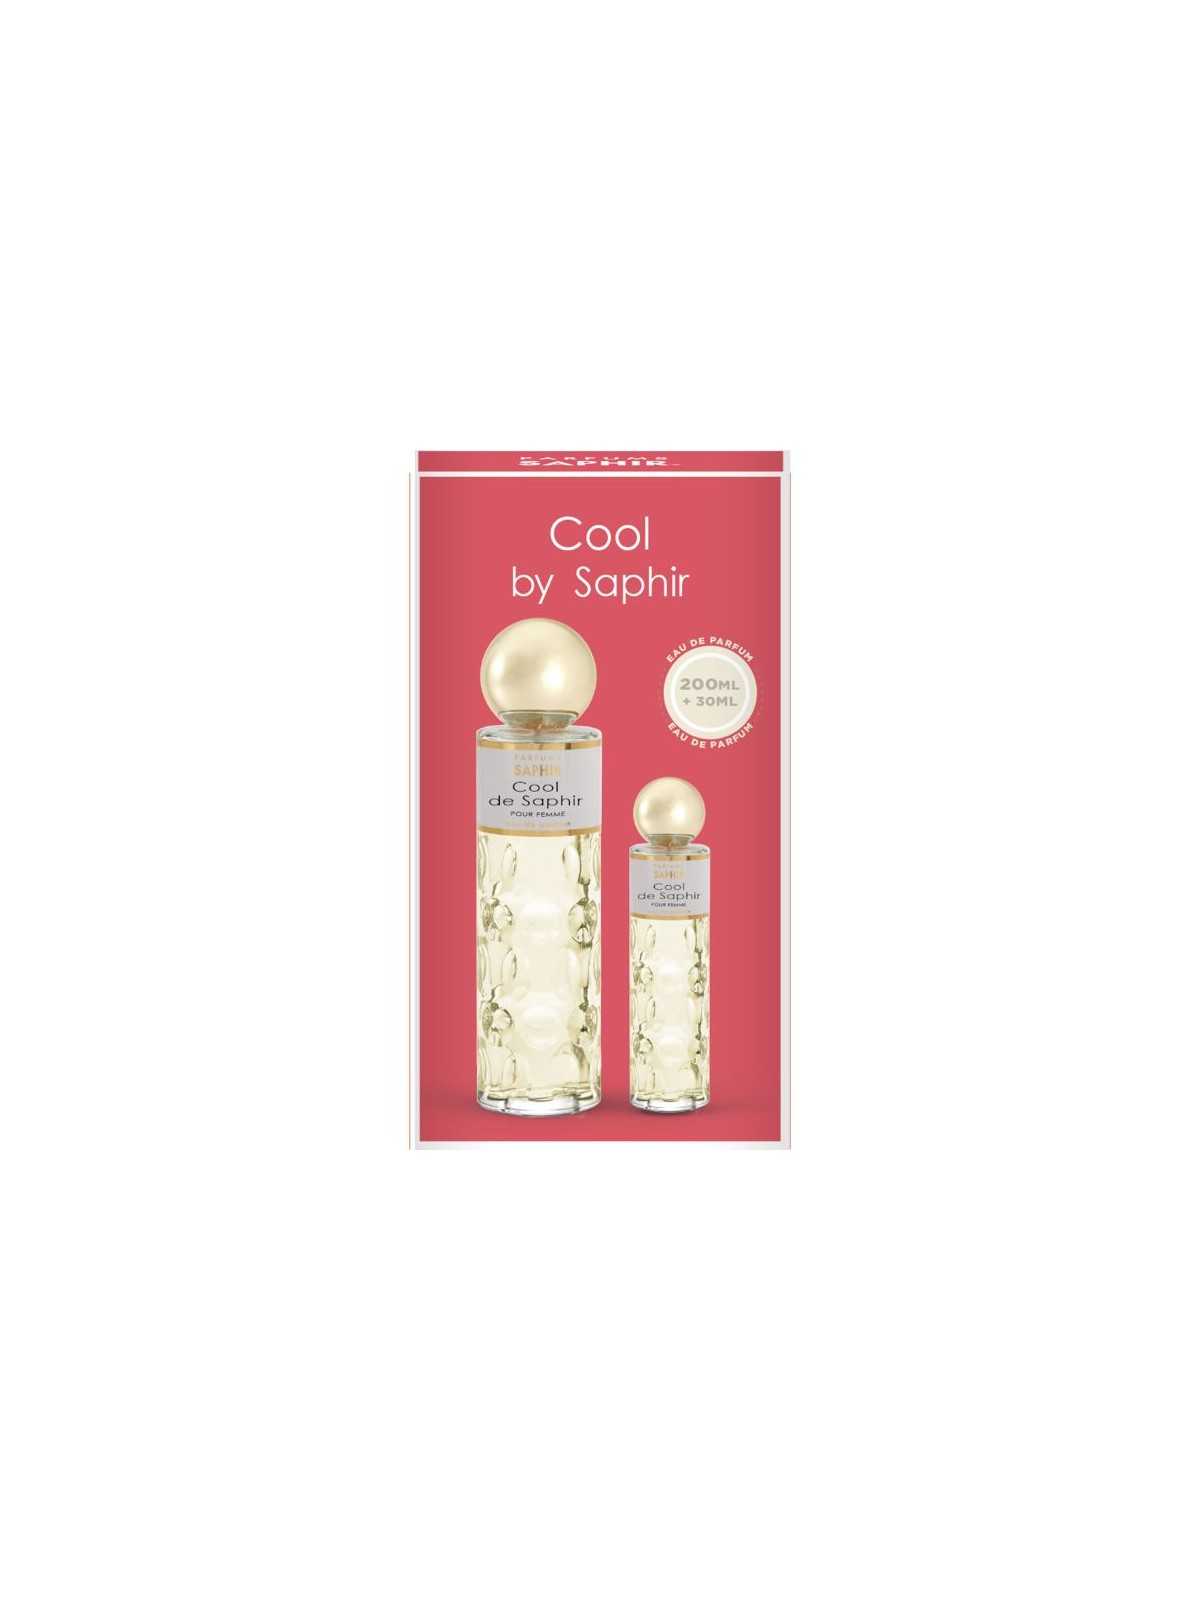 Regala ✔️ Saphir set de perfume Cool 200ml + vapo 30ml con nuestra selección de Inicio por tan sólo 13,95 € o precio específico 13,95 € en Thalie Care